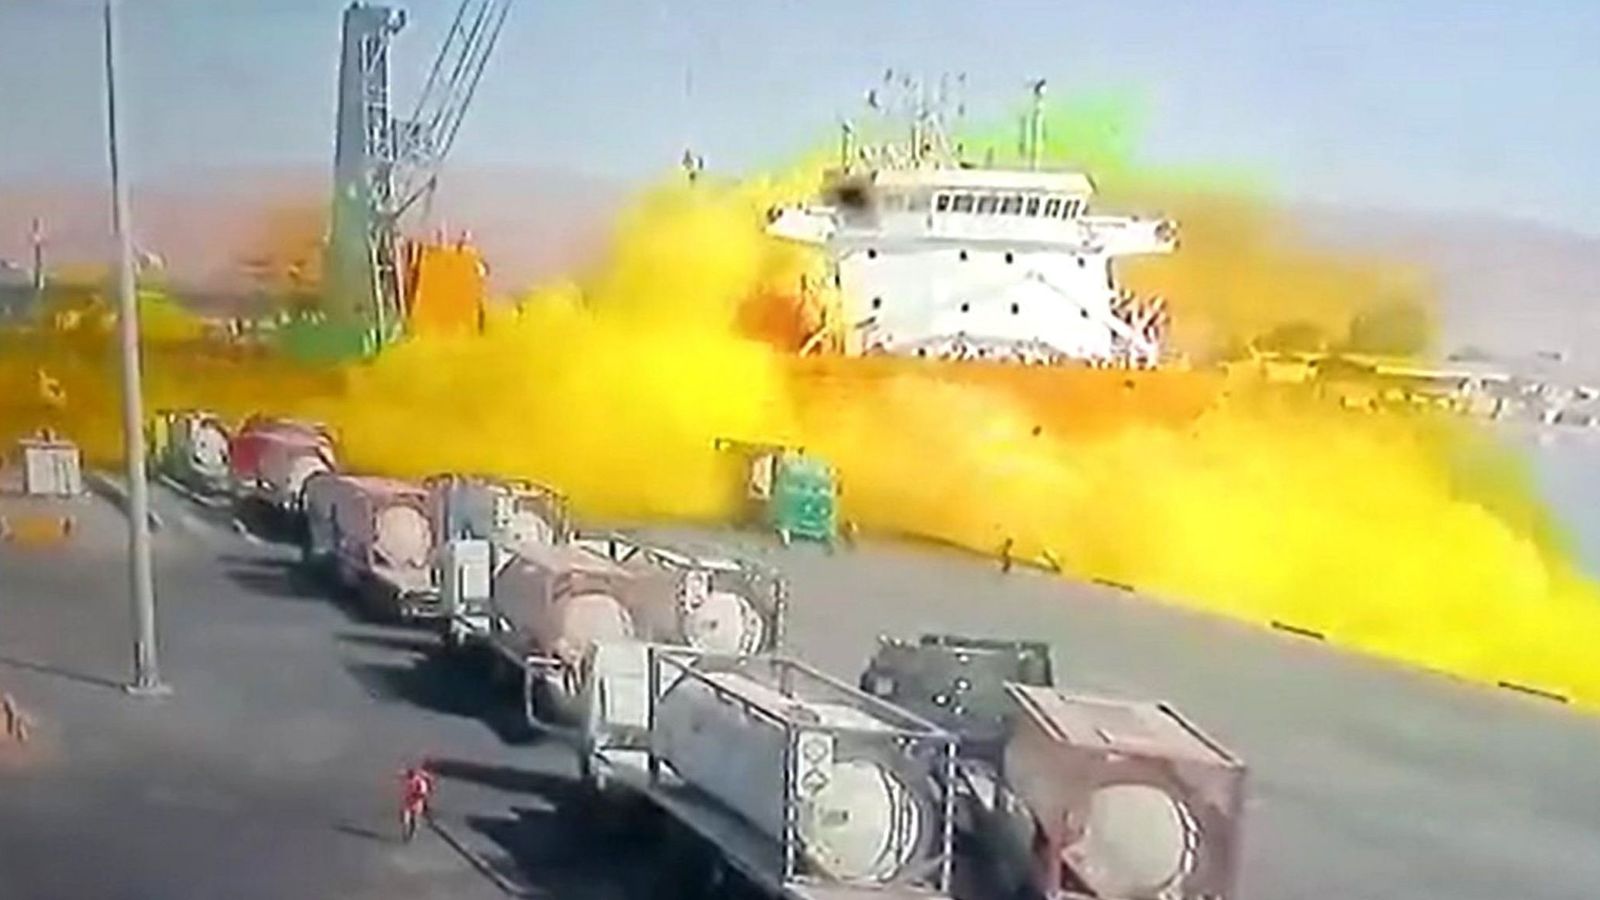 ヨルダン港での有毒な黄色の塩素の爆発により、少なくとも13人が死亡し、250人が負傷しました。 世界のニュース